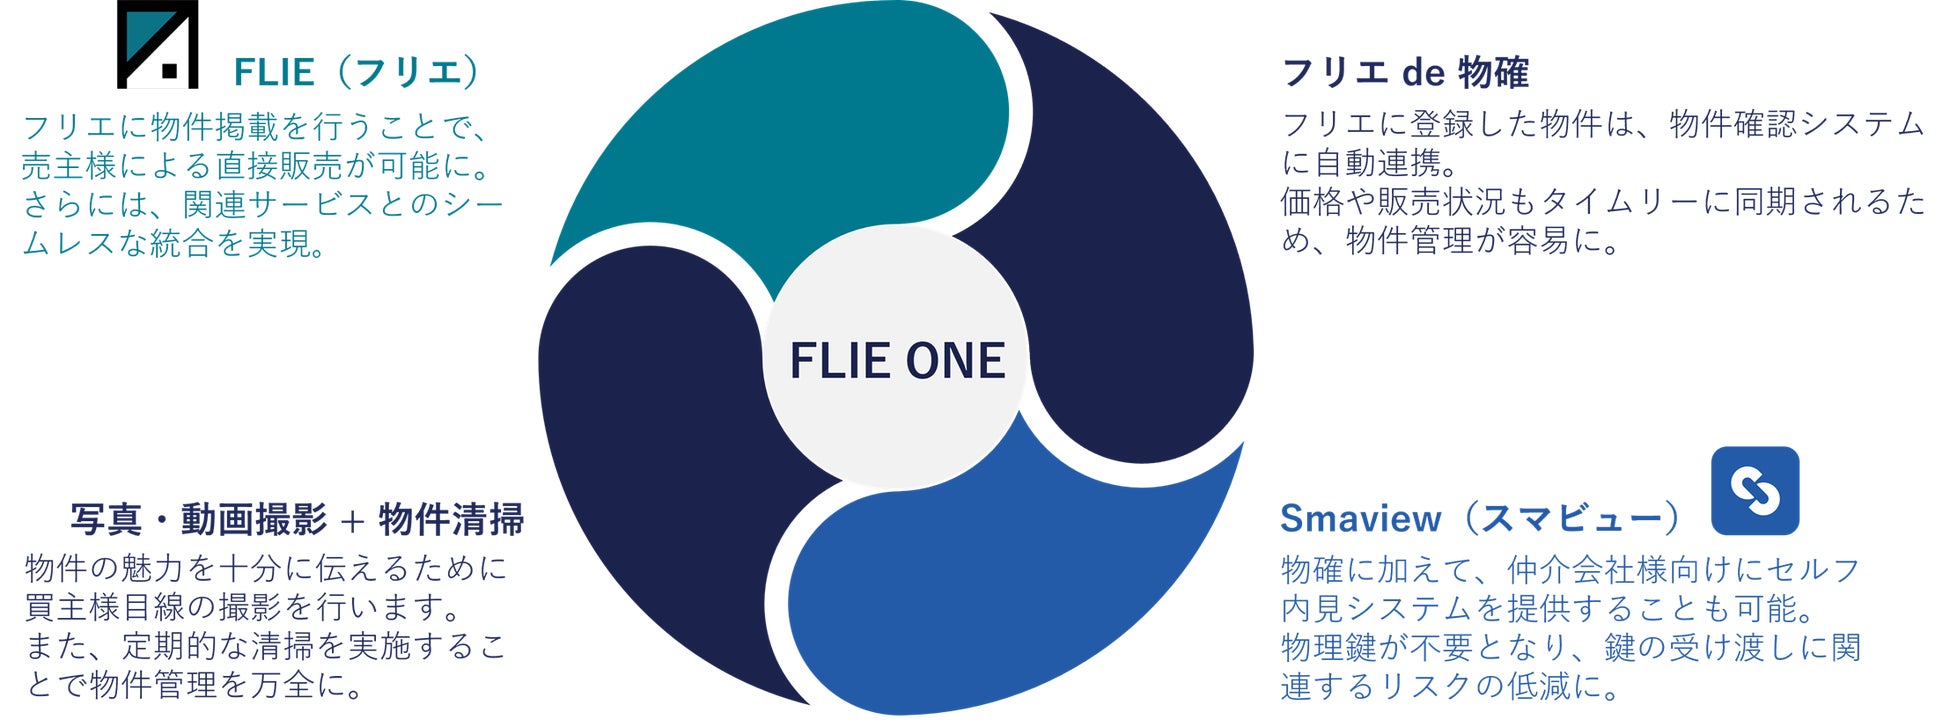 不動産業界の業務フローを一新させる、業界初 (※1) のDX支援パッケージ「FLIE ONE」 登場のサブ画像4